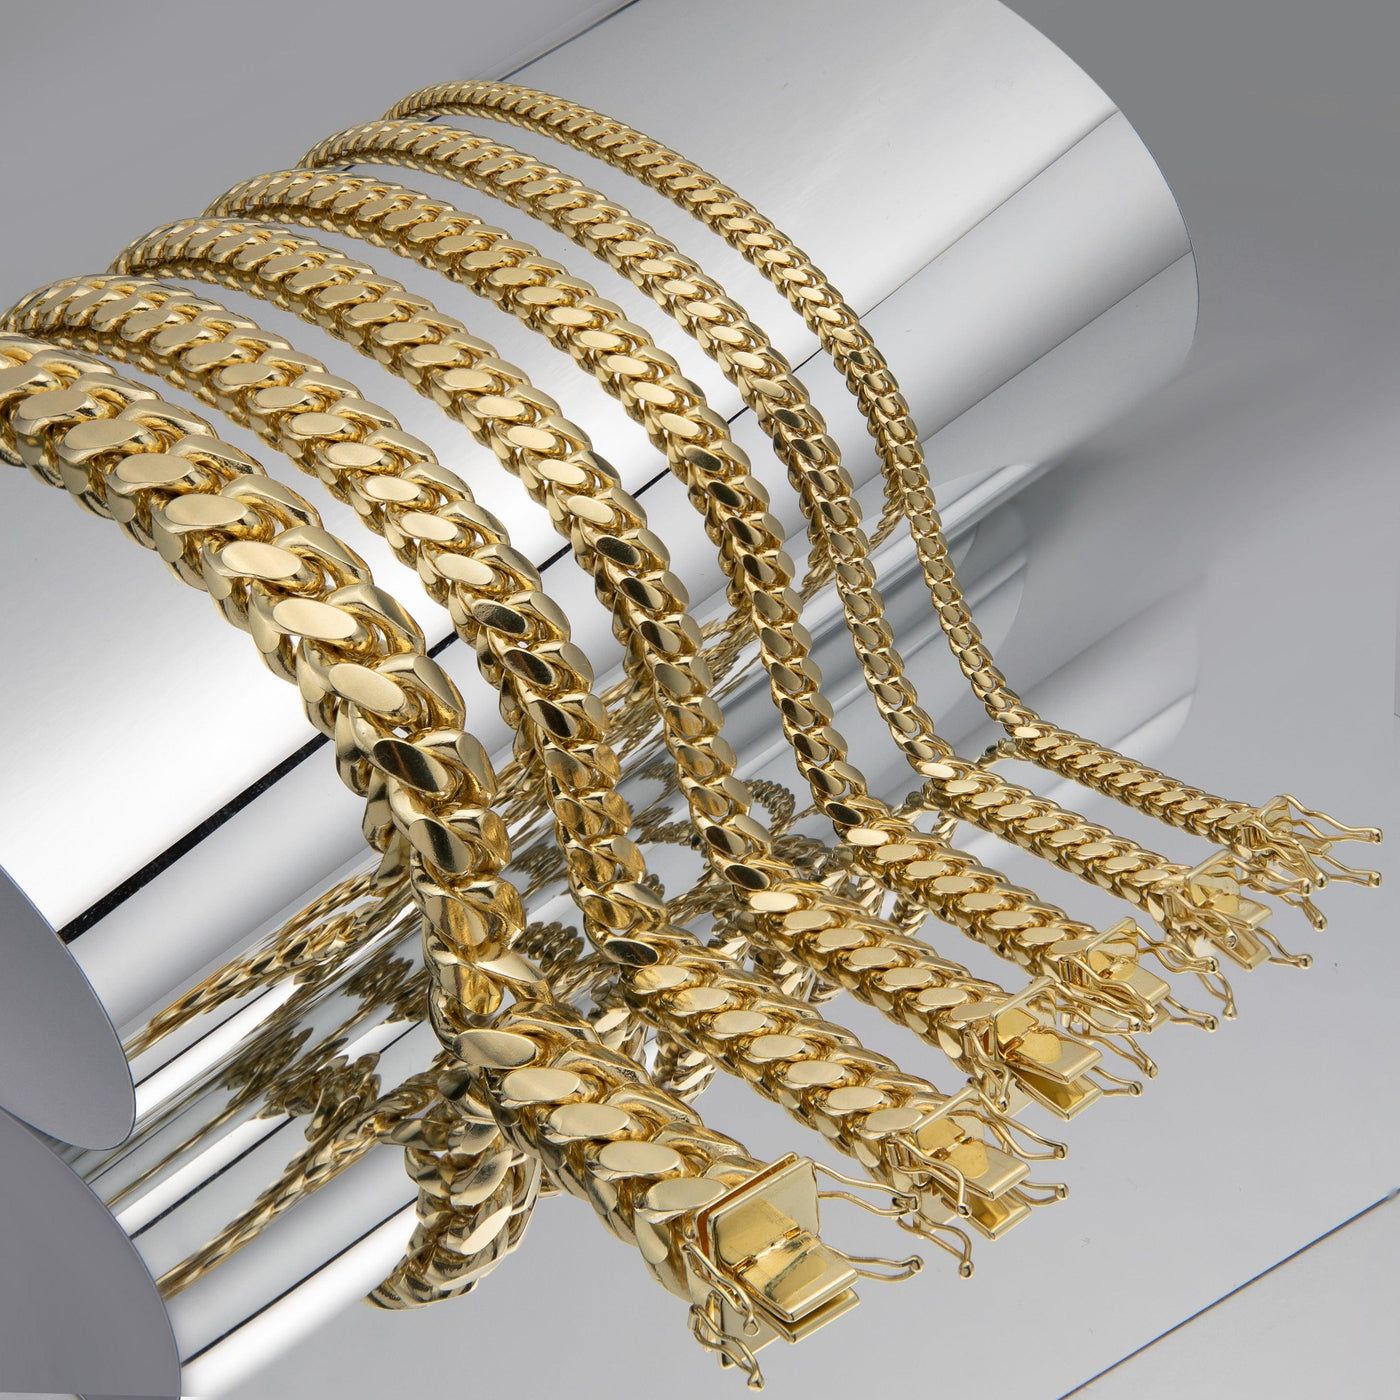 Most Sturdy Gold Chains - bayamjewelry